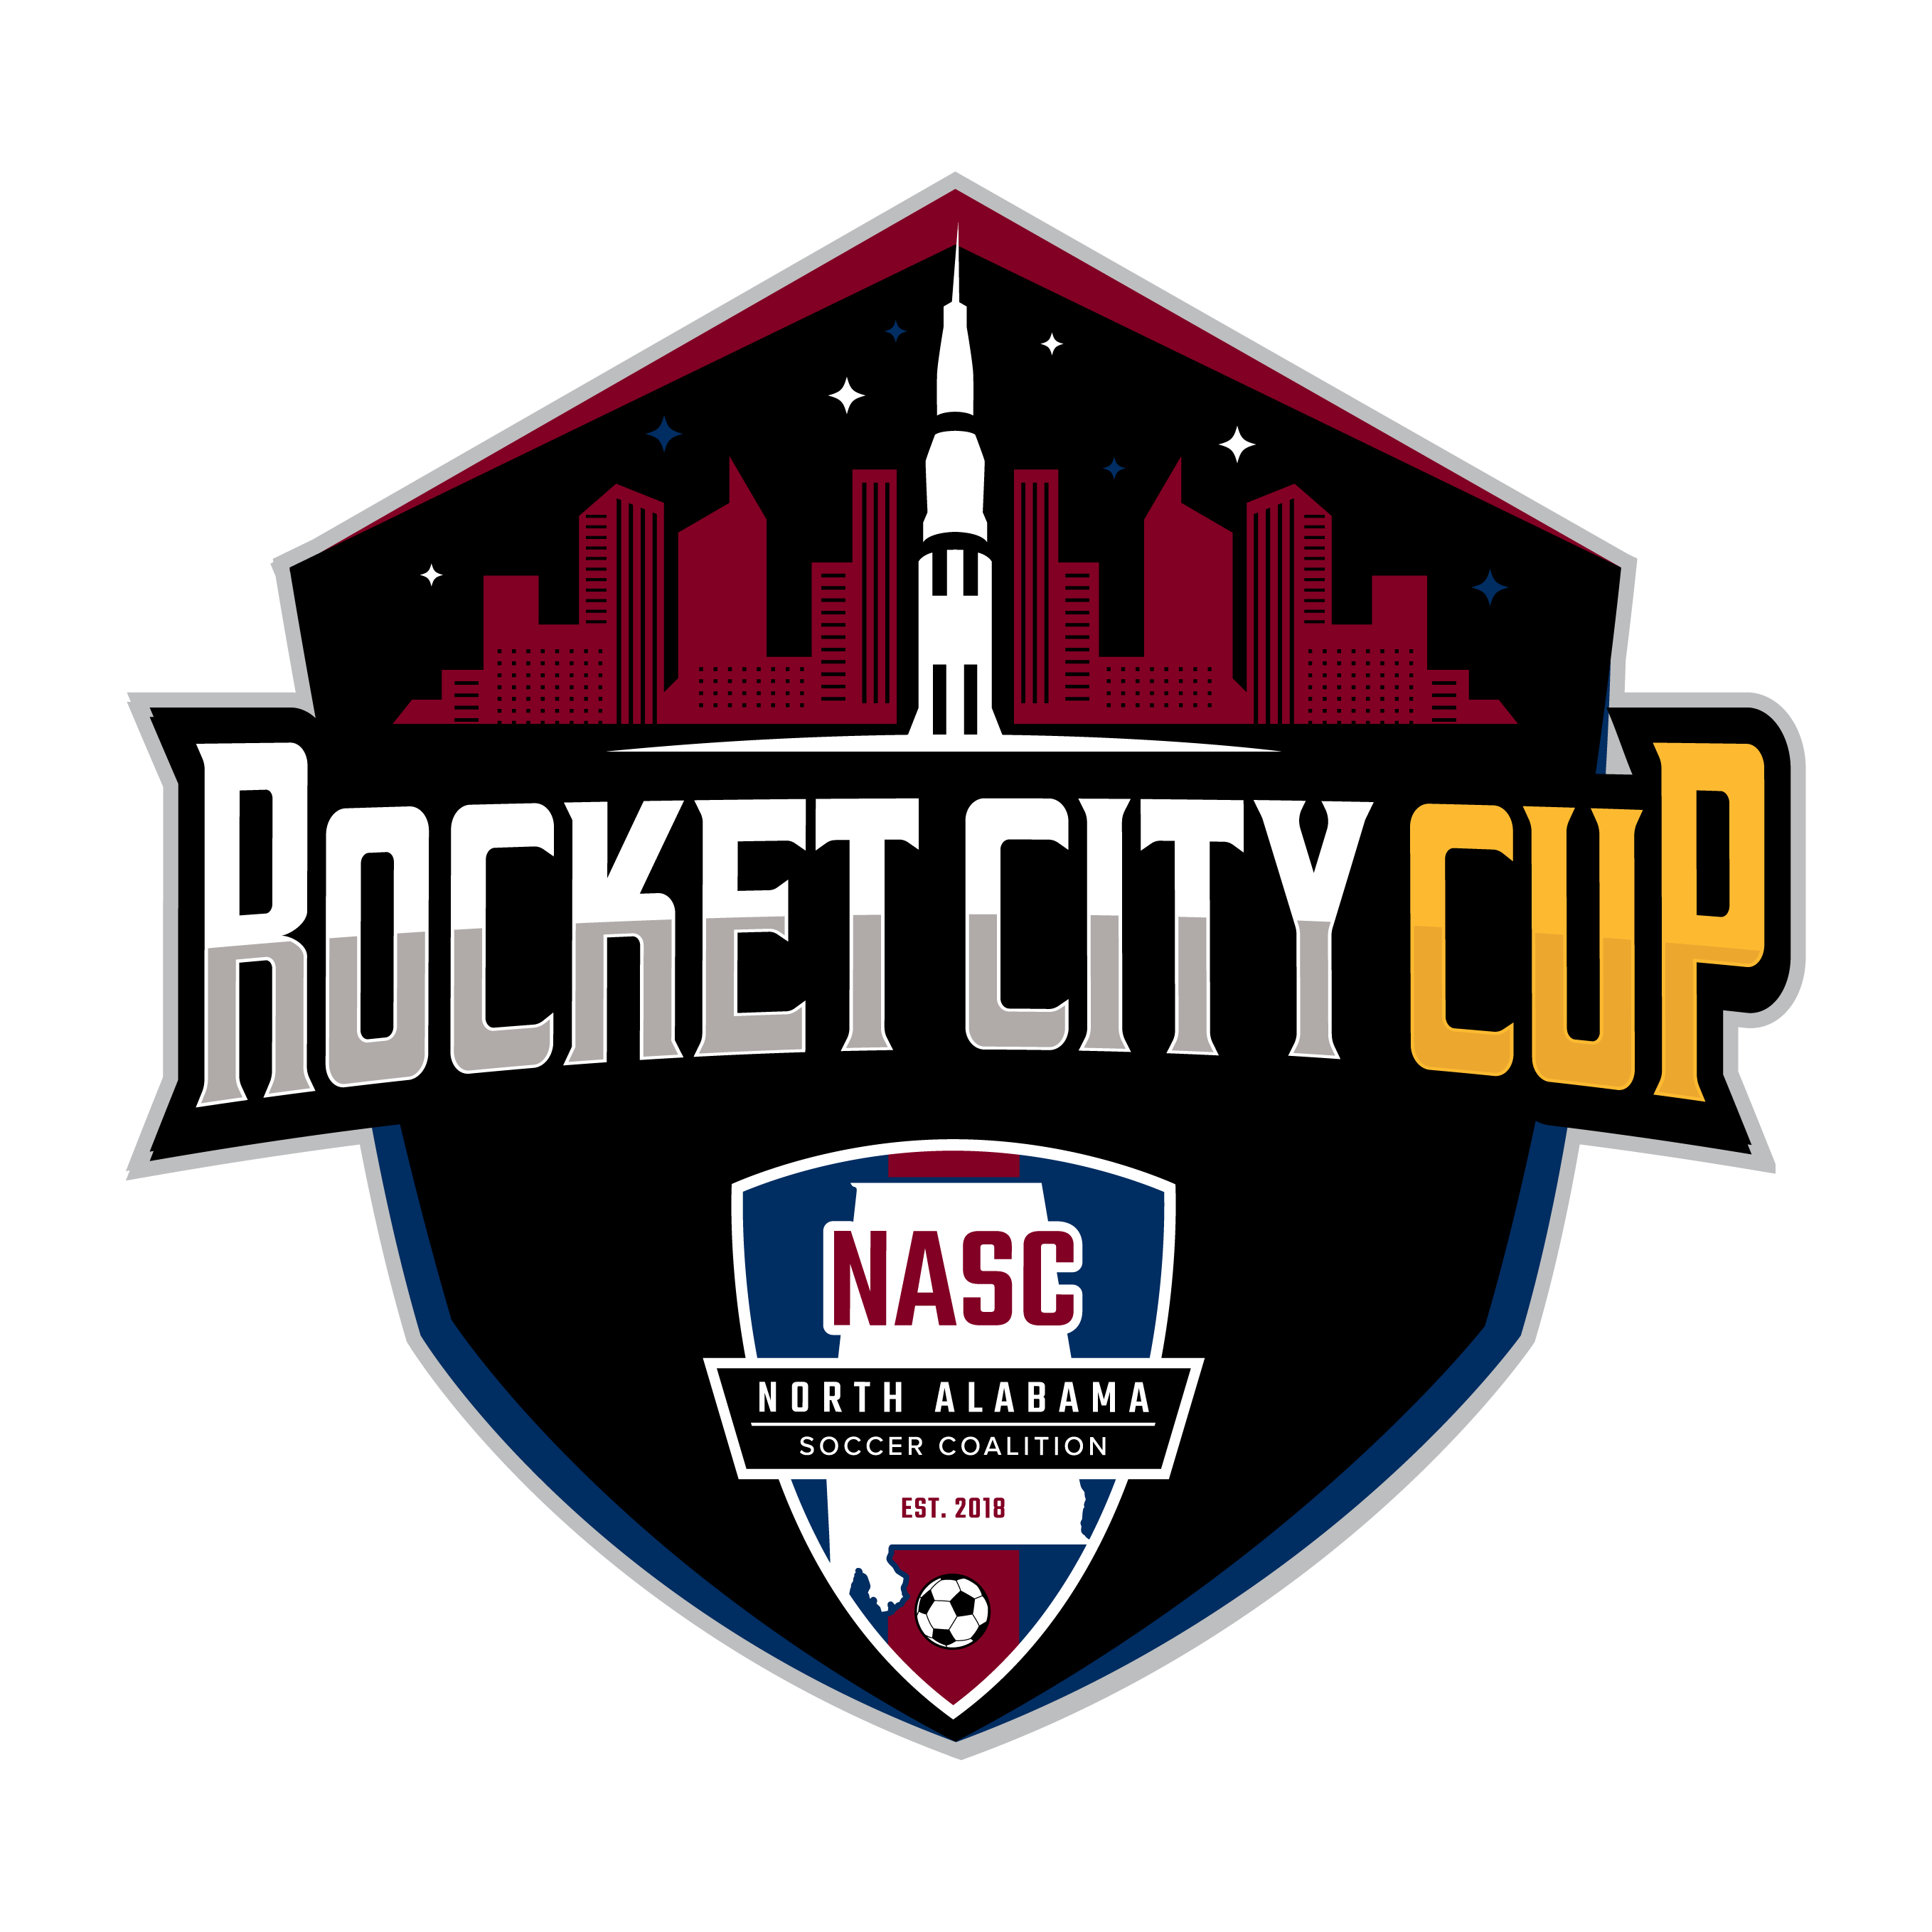 Rocket City Cup